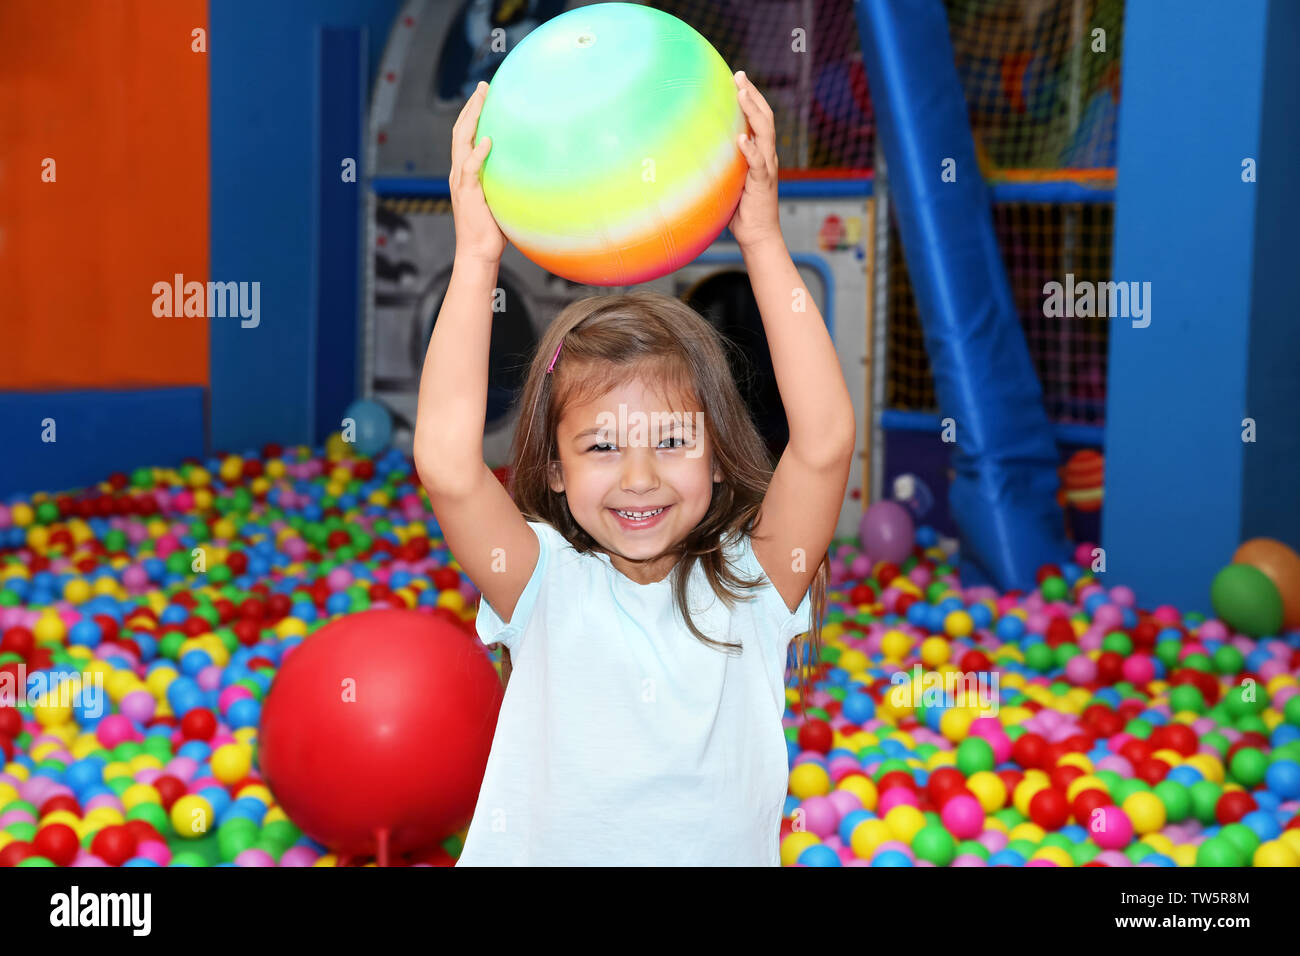 Carina ragazza che gioca con la palla in un centro di intrattenimento Foto Stock